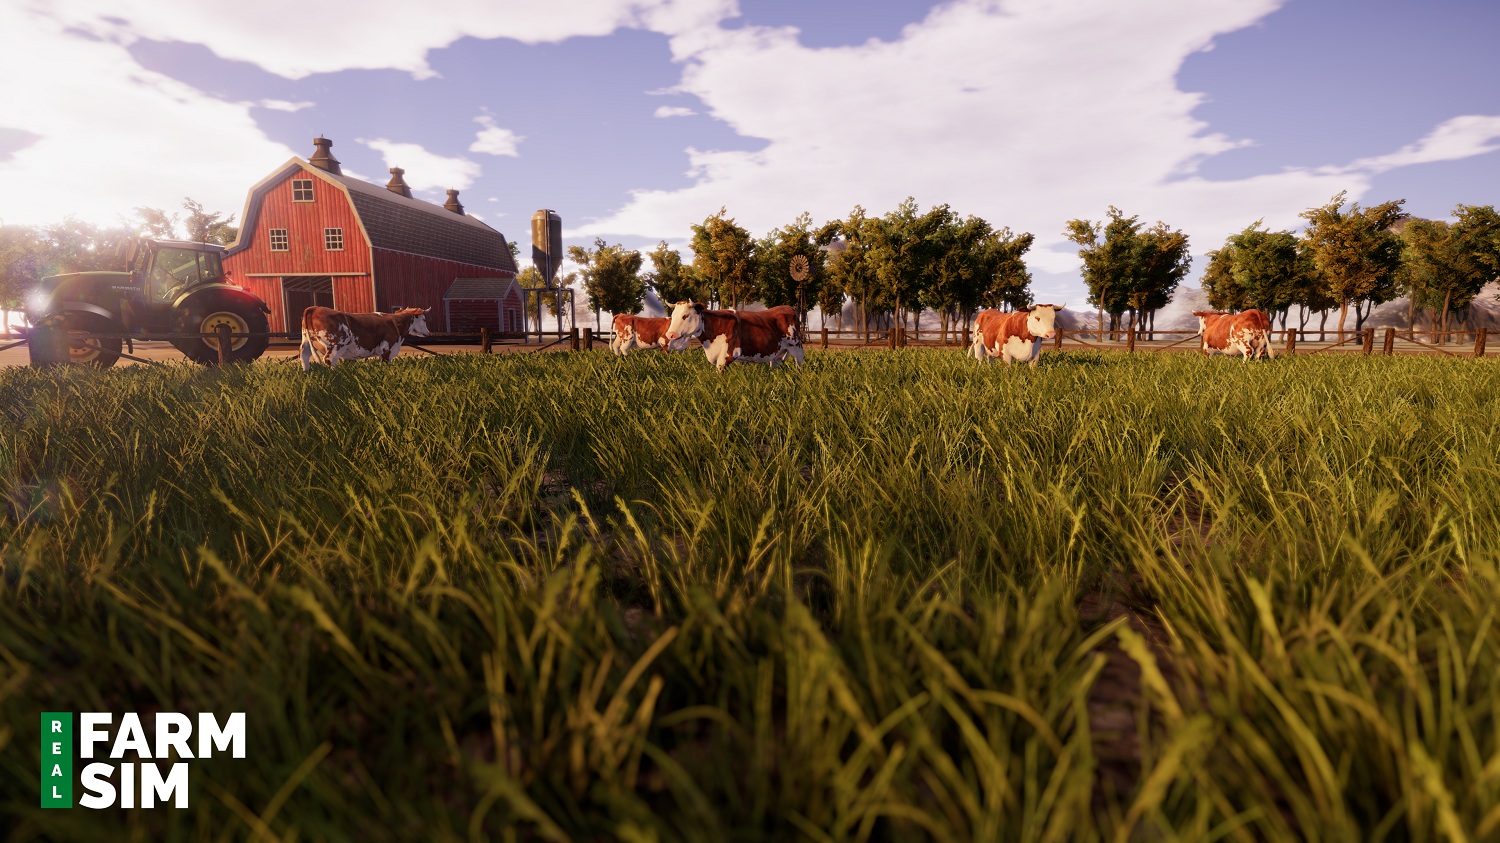 Real Farm se presenta en su primer gameplay tráiler